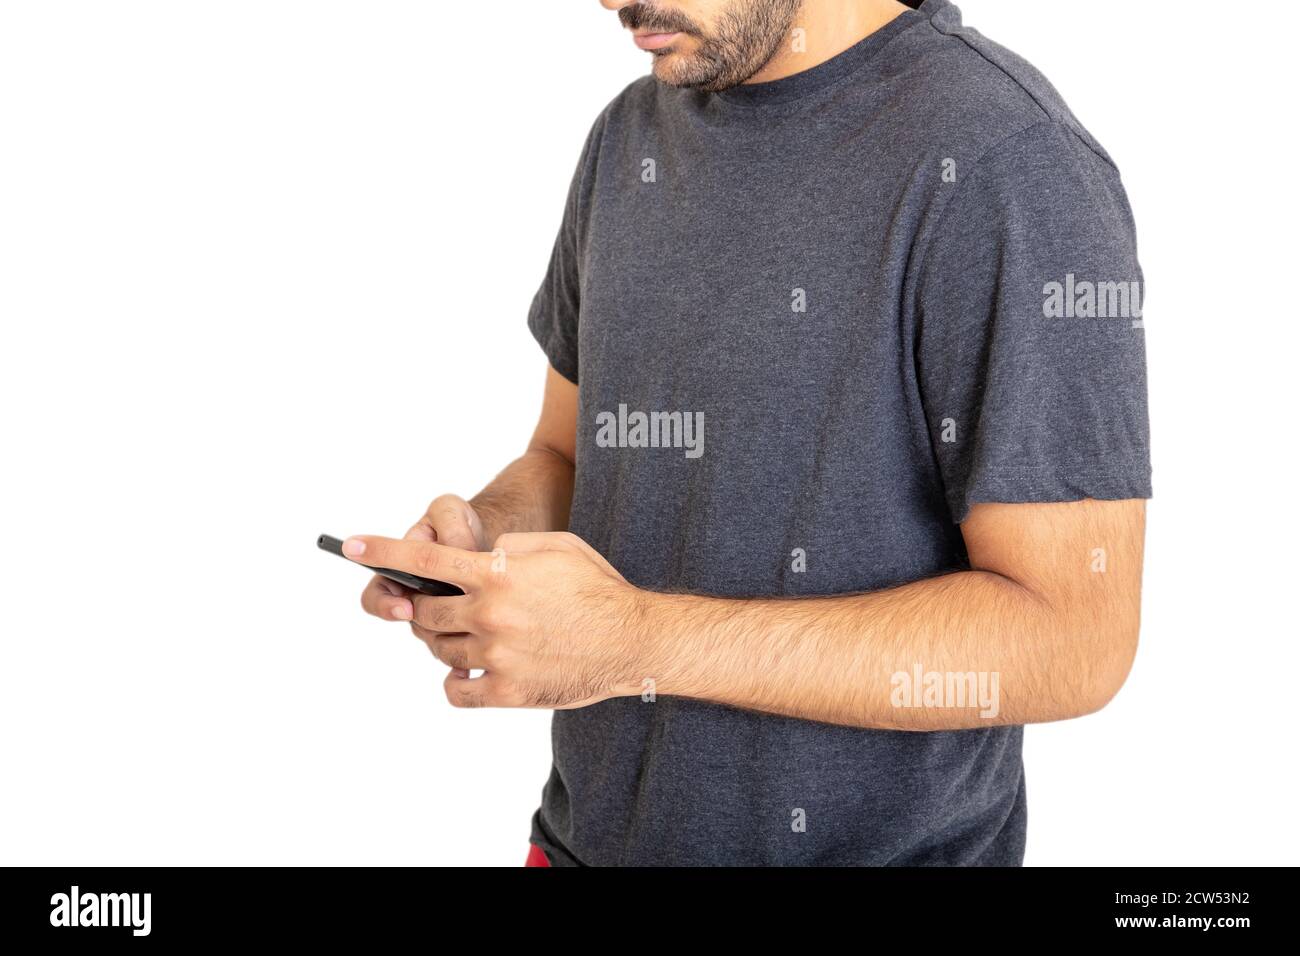 Jeune homme portant un T-shirt blanc lookina sur son téléphone portable isolé contre fond blanc. Vêtements décontractés pour hommes, modèle de publicité Banque D'Images